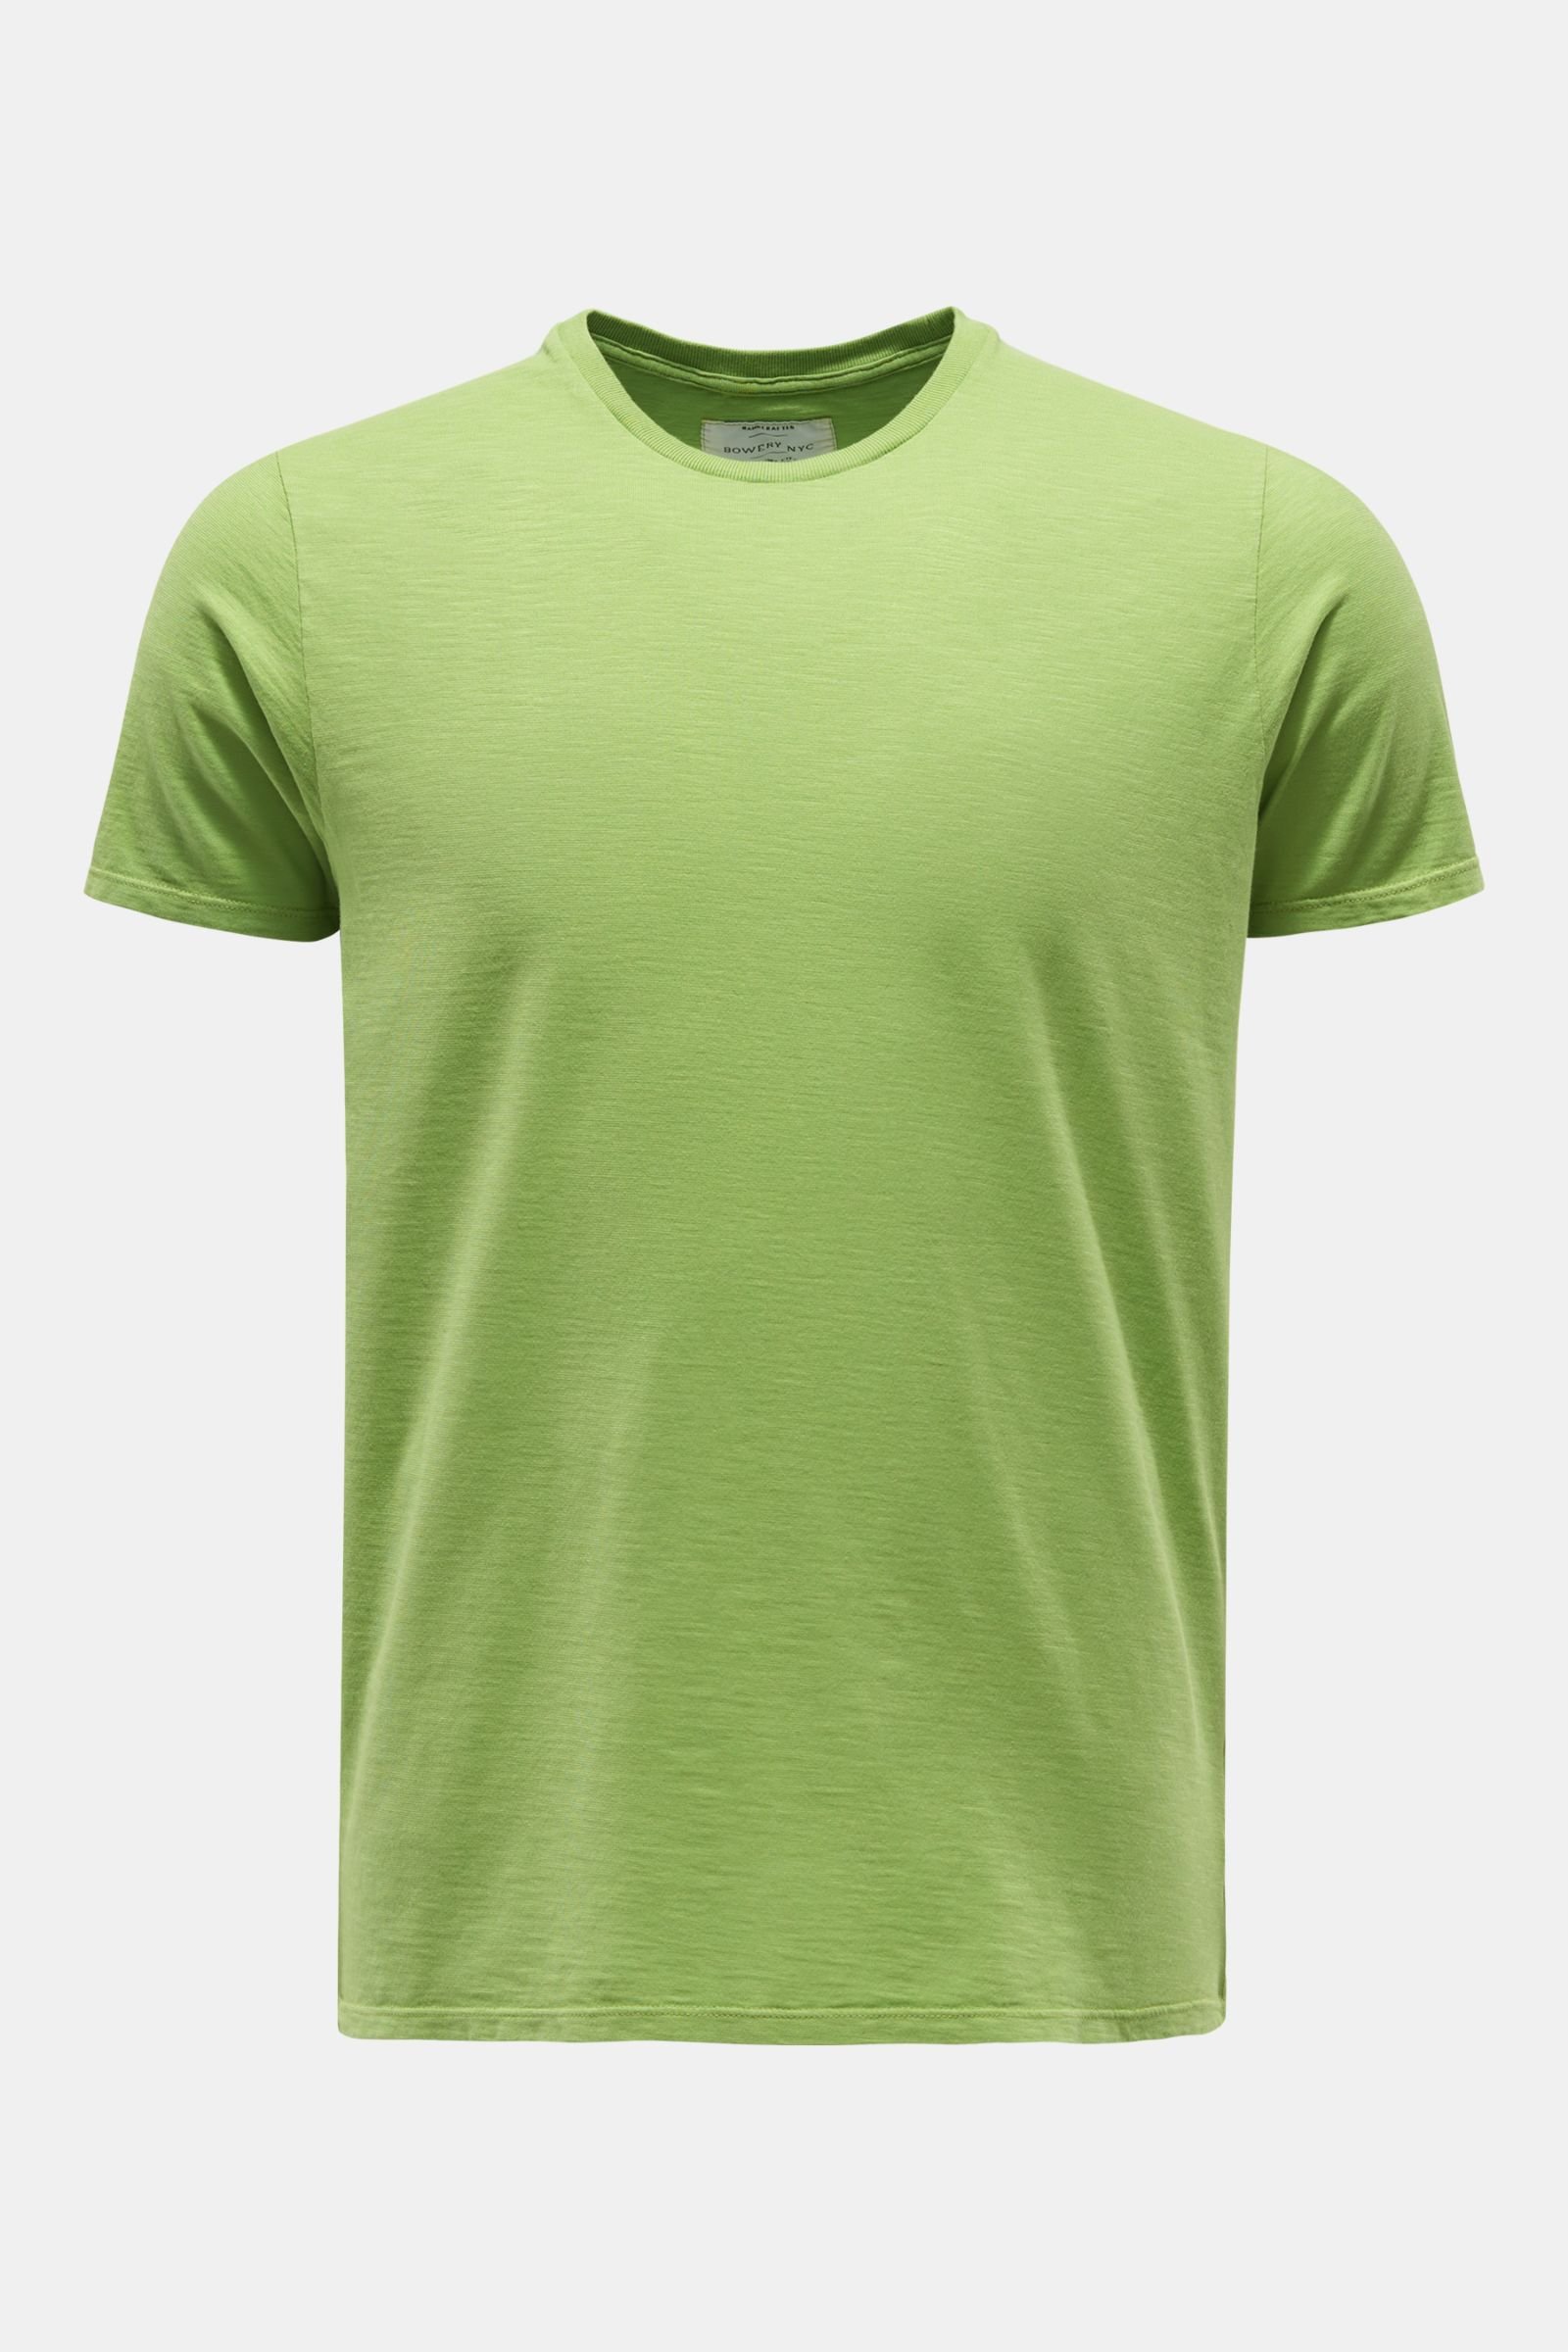 Crew neck T-shirt green